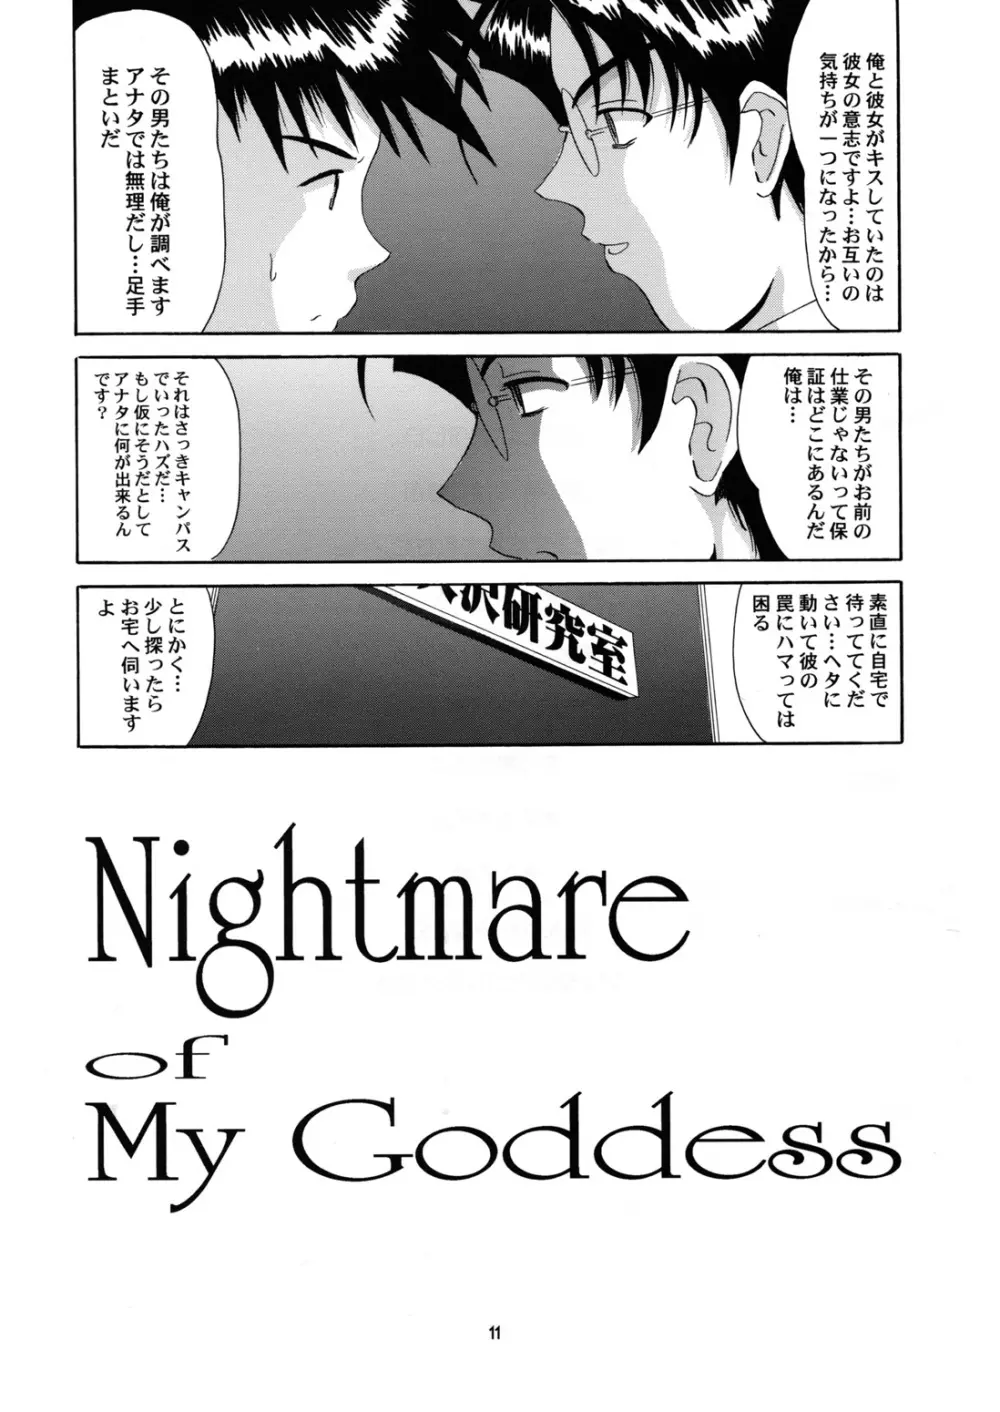 Nightmare of My Goddess 6 11ページ